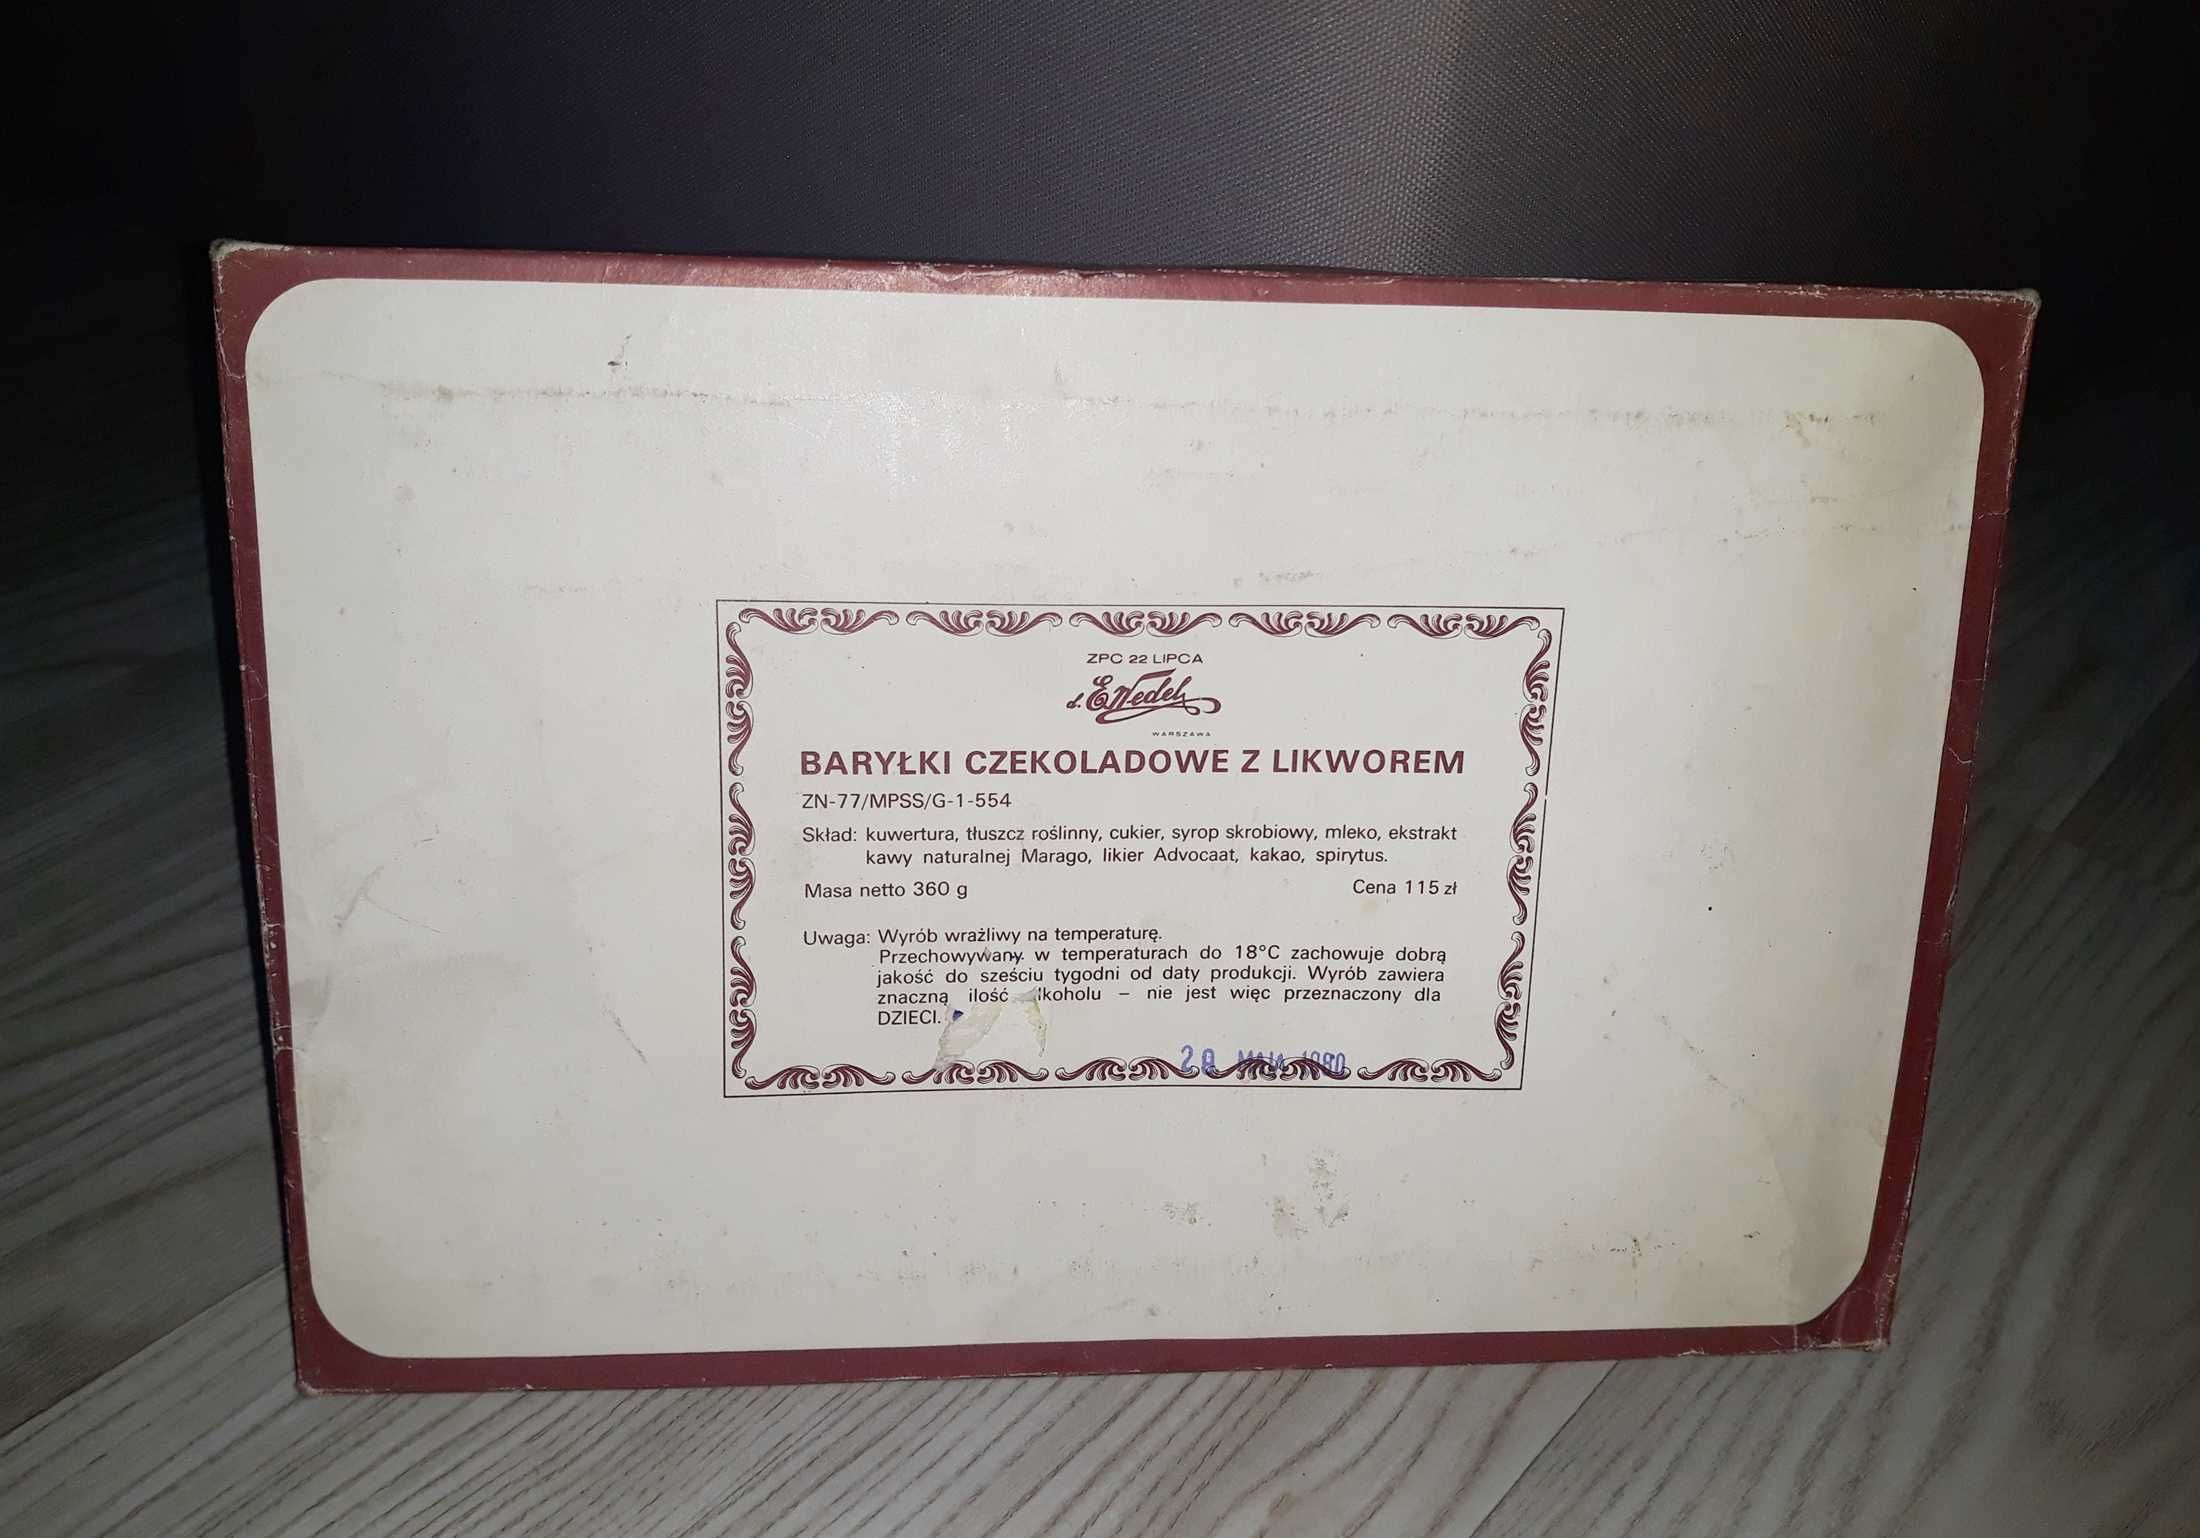 Baryłki czekoladowe z likworem pudełko Wedel PRL 22 lipca 1980